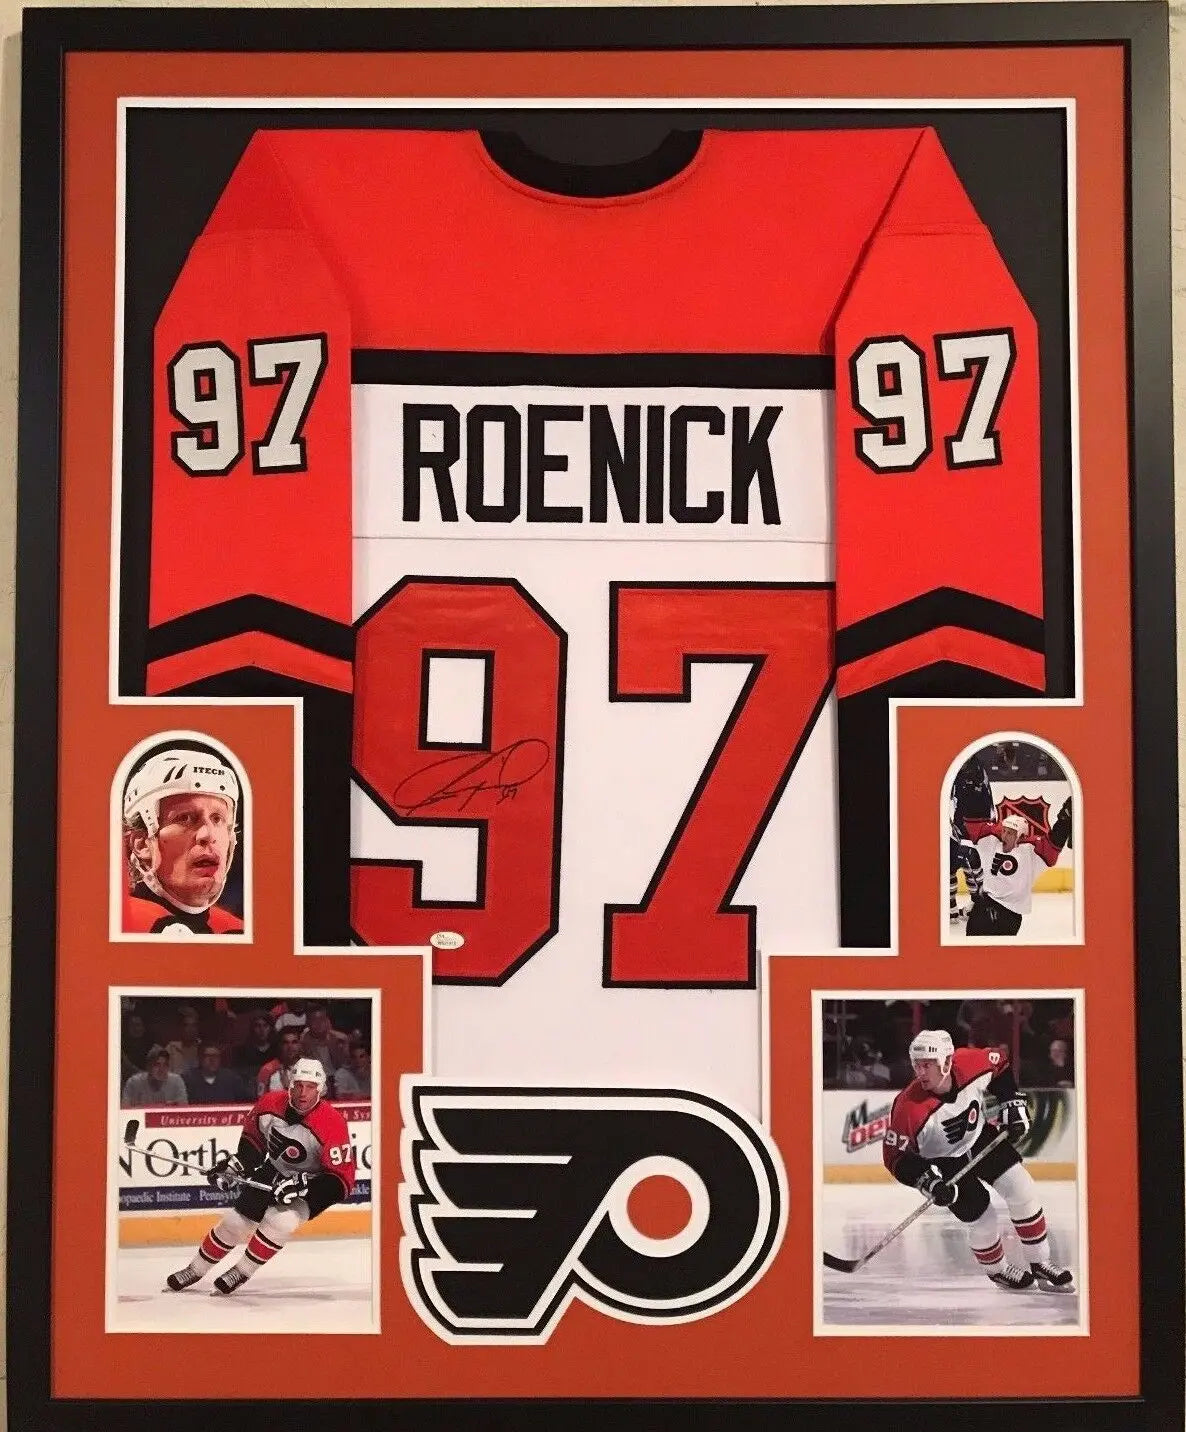 MVP Authentics Framed Jeremy Roenick Autographed Signed Philadelphia Flyers Jersey Jsa Coa 450 sports jersey framing , jersey framing